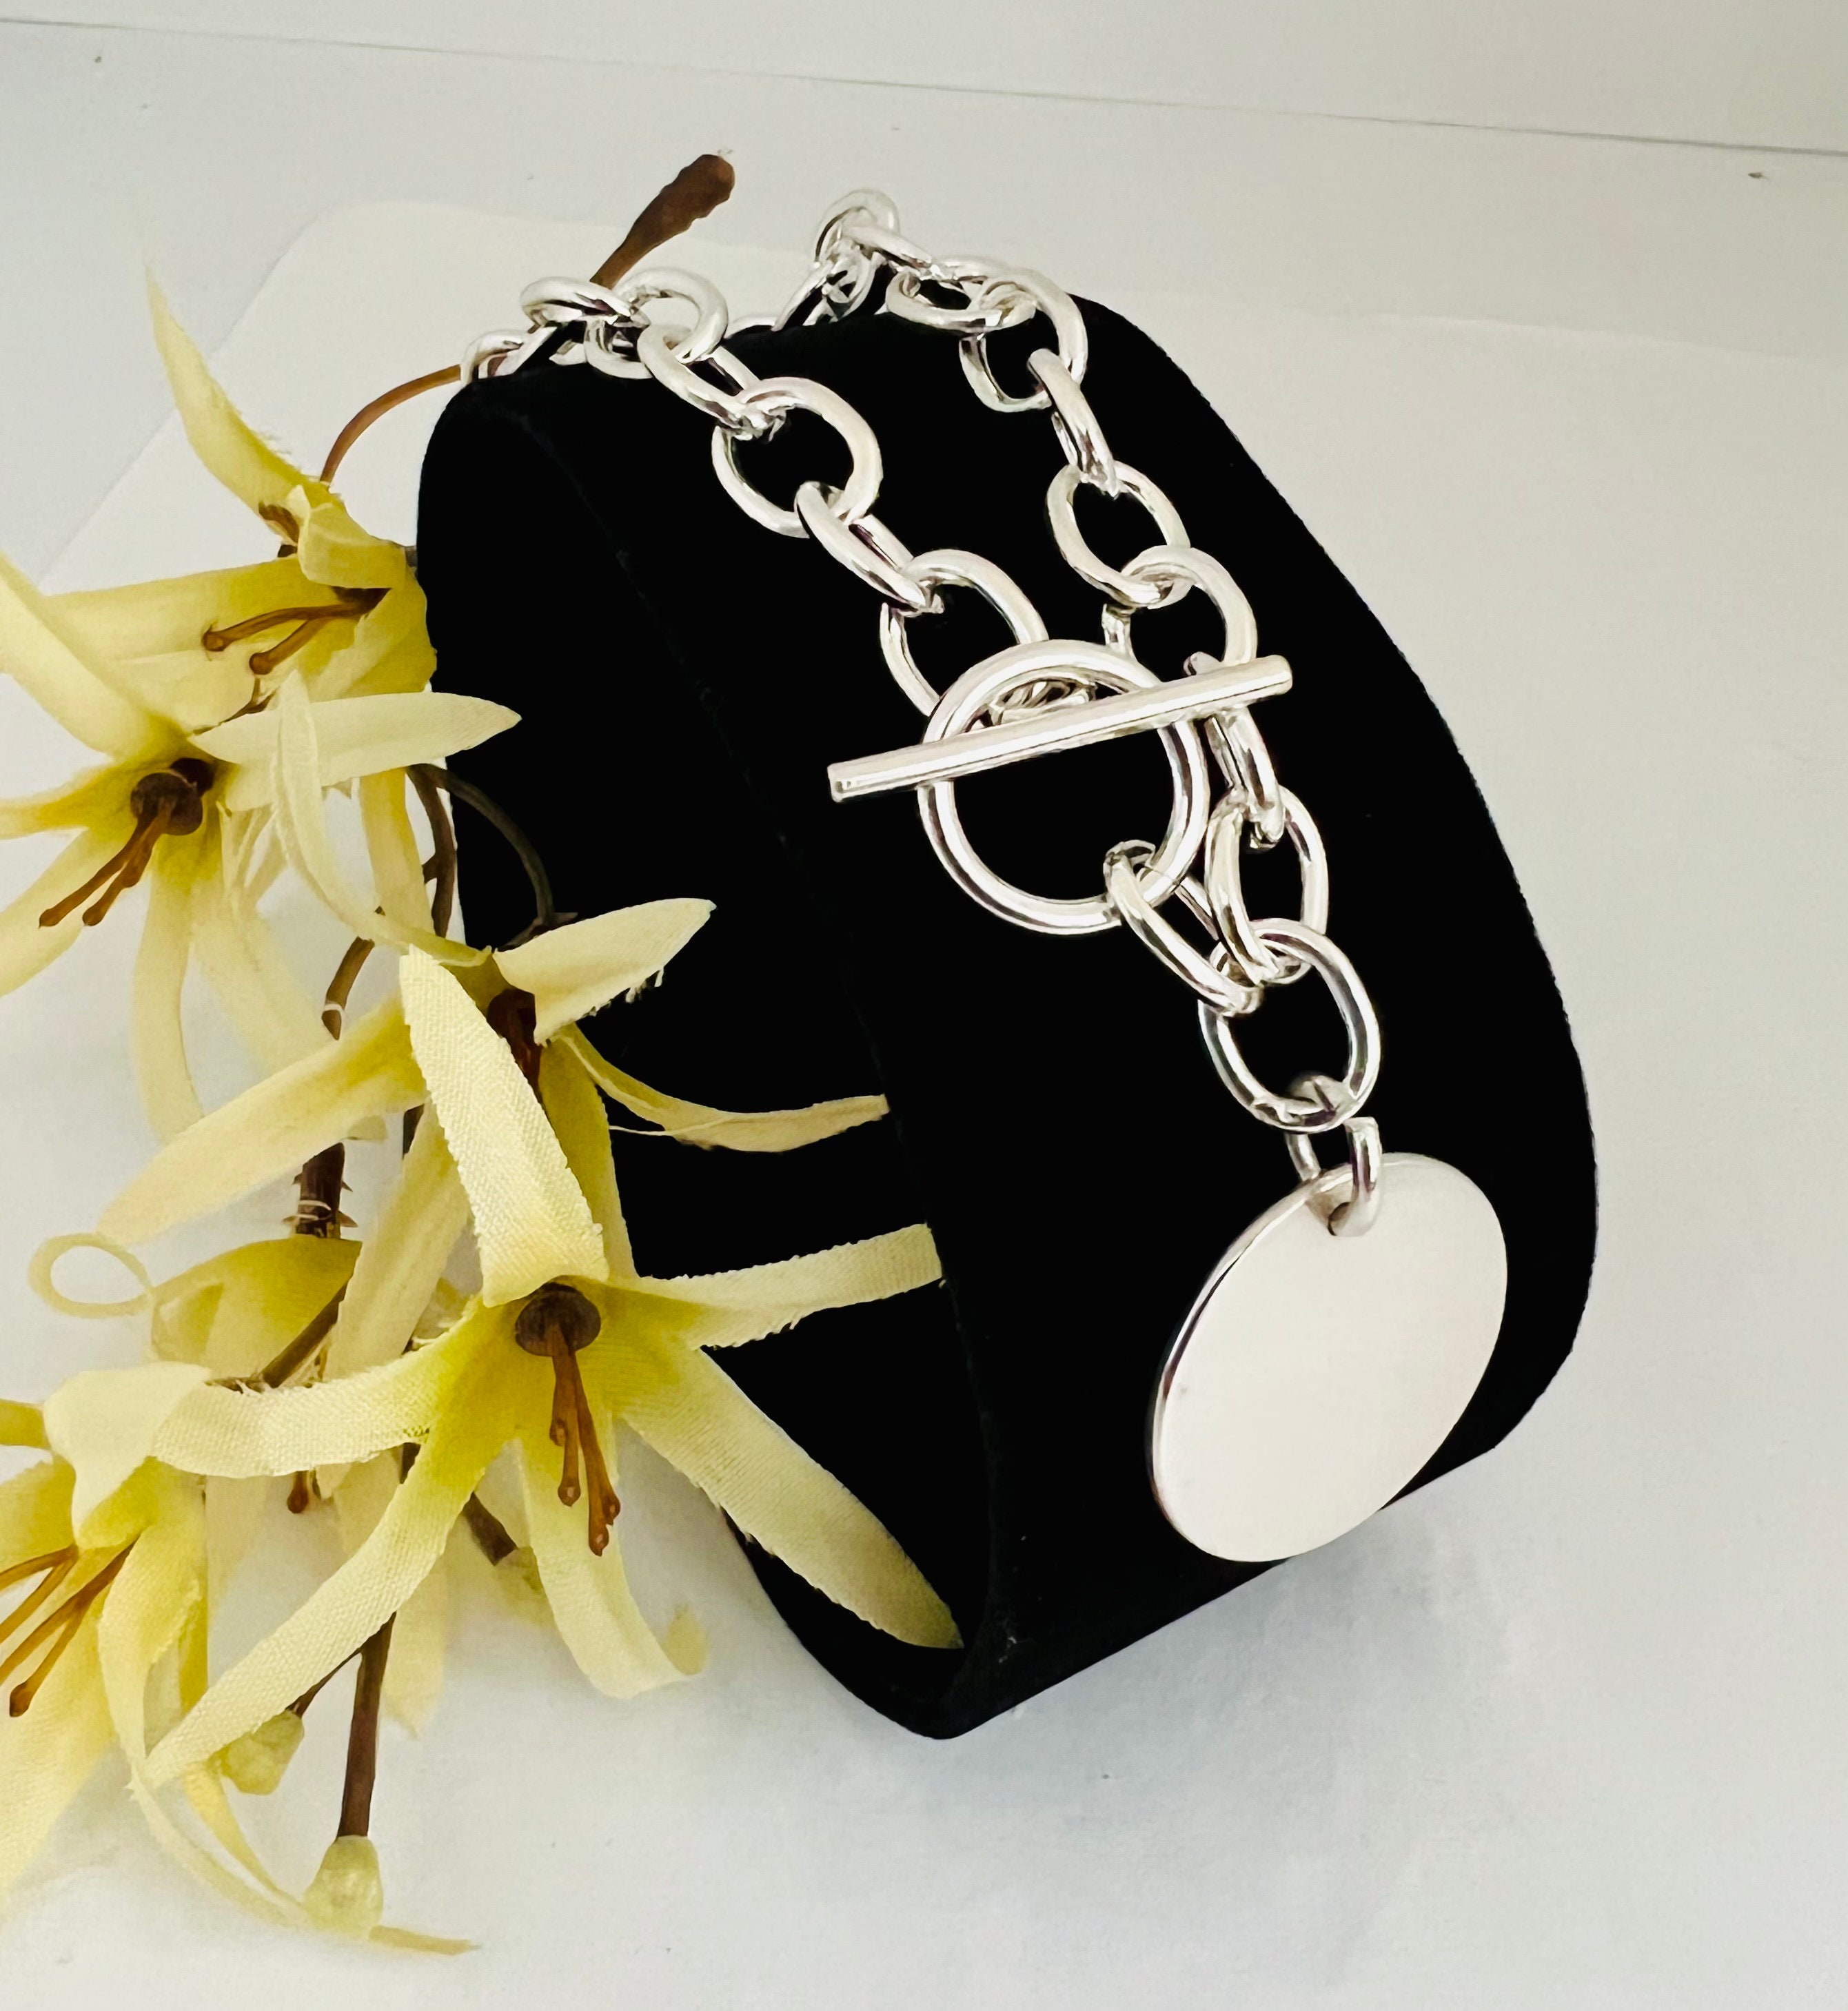 925 Solid Silver Toggle Heart Charm Bracelet, Personalized Rolo Link  Bracelet,5mm,6.5mm,8mm Monogram Custom Bracelet, Gift for Her, Sale 